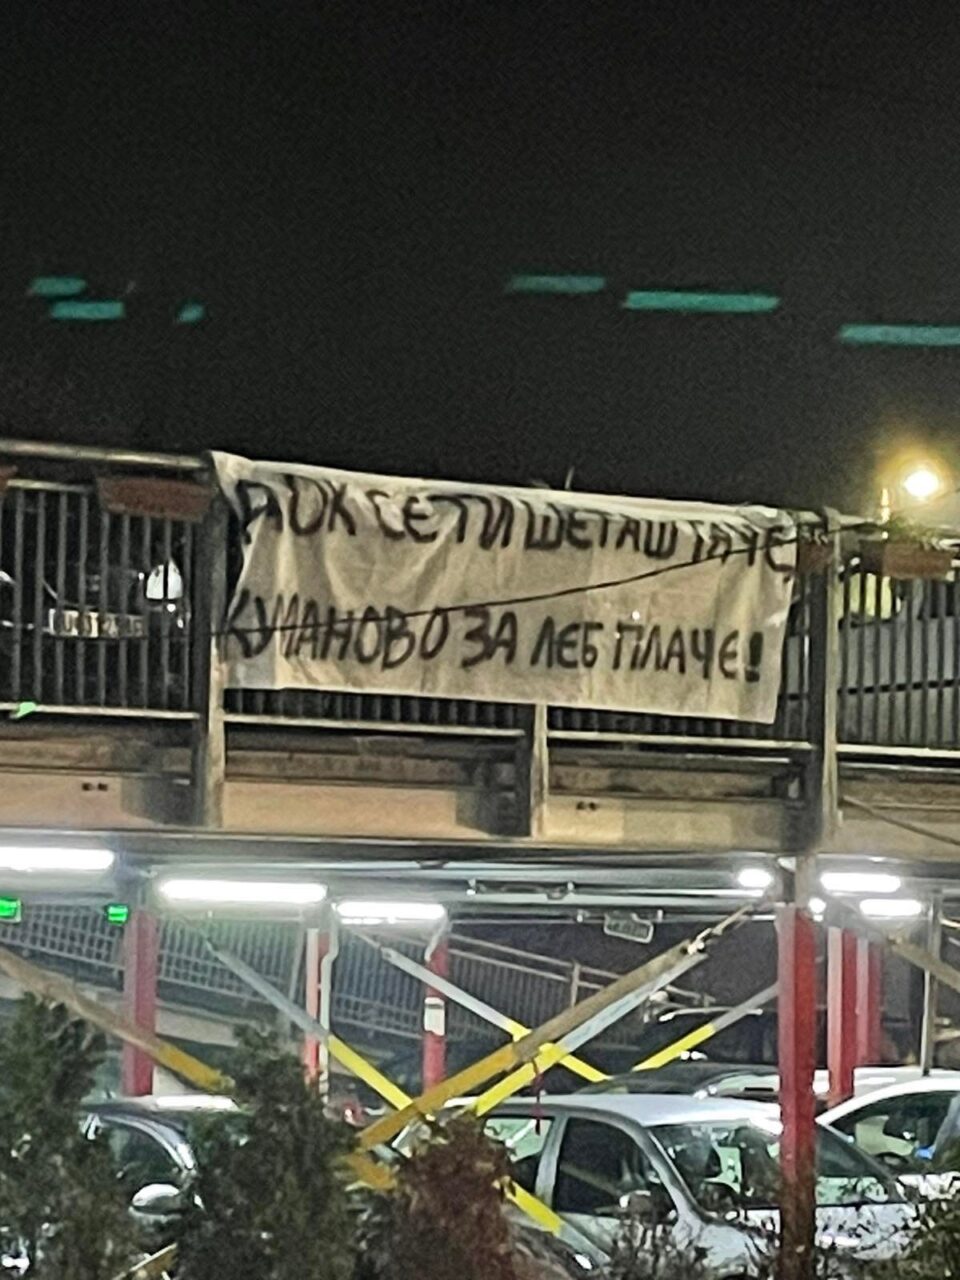 Пречек на Ковачевски во Куманово со транспарент: Док се ти шеташ Таче, Куманово за леб плаче!